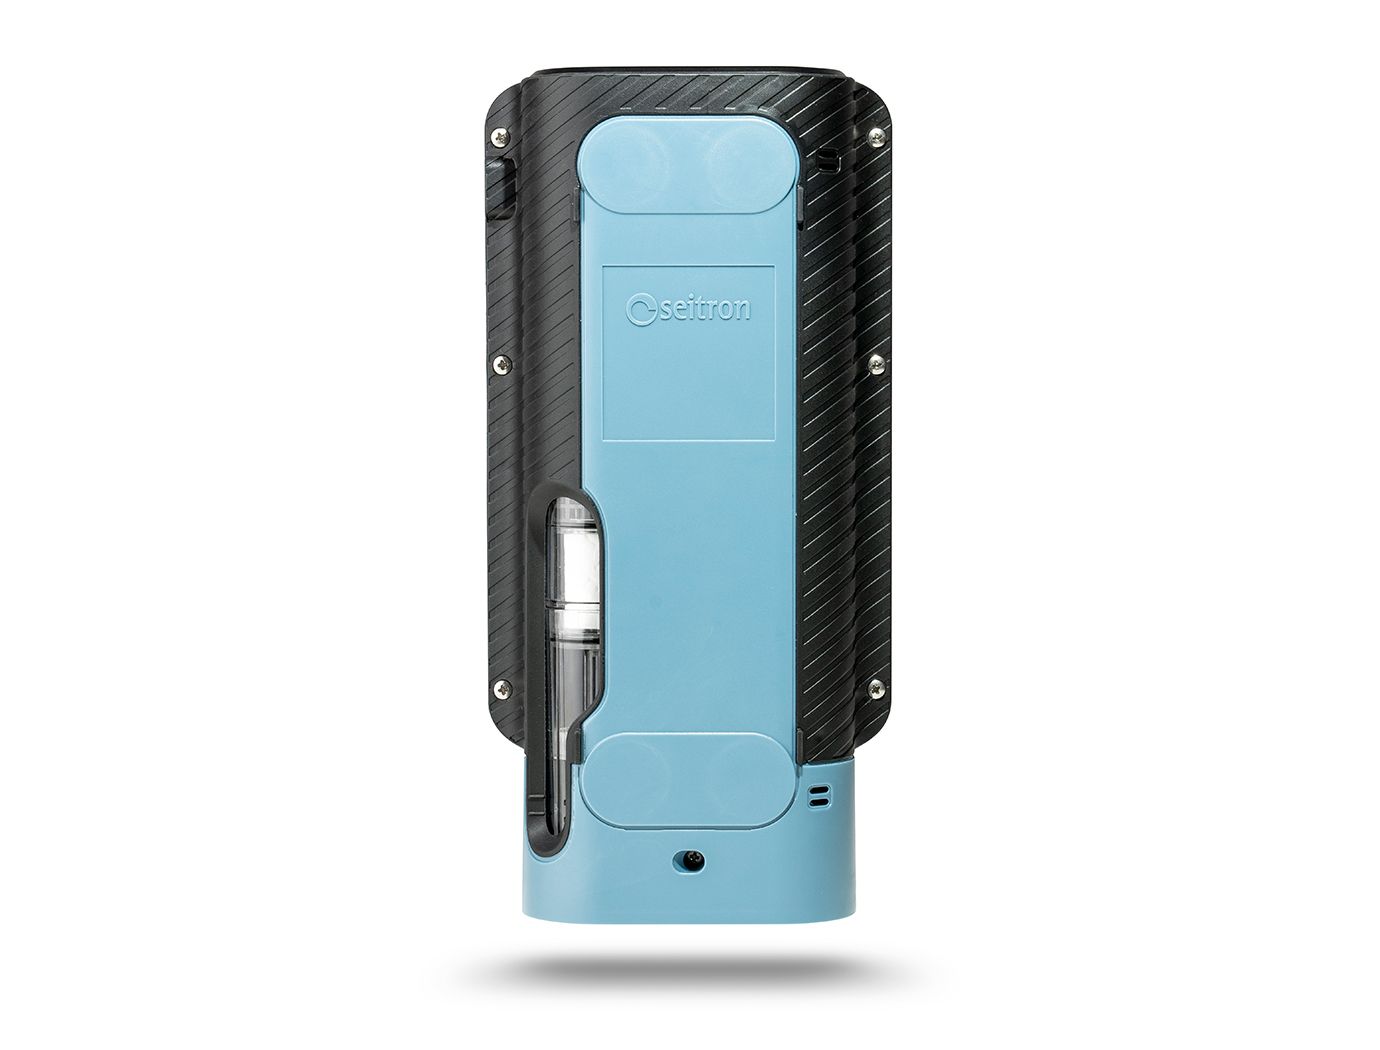 Seitron Novo 2-ST analizzatore portatile di combustione - fumi 02, CO con stampante bluetooth